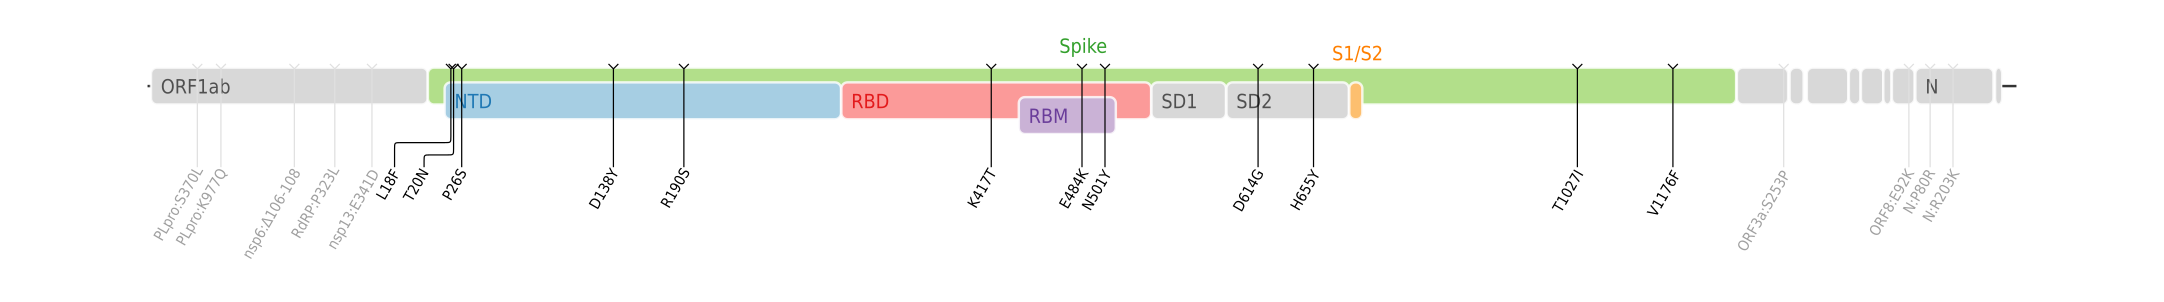 Gamma變異株的氨基酸突變（在SARS-CoV-2的基因組上作圖）[18]